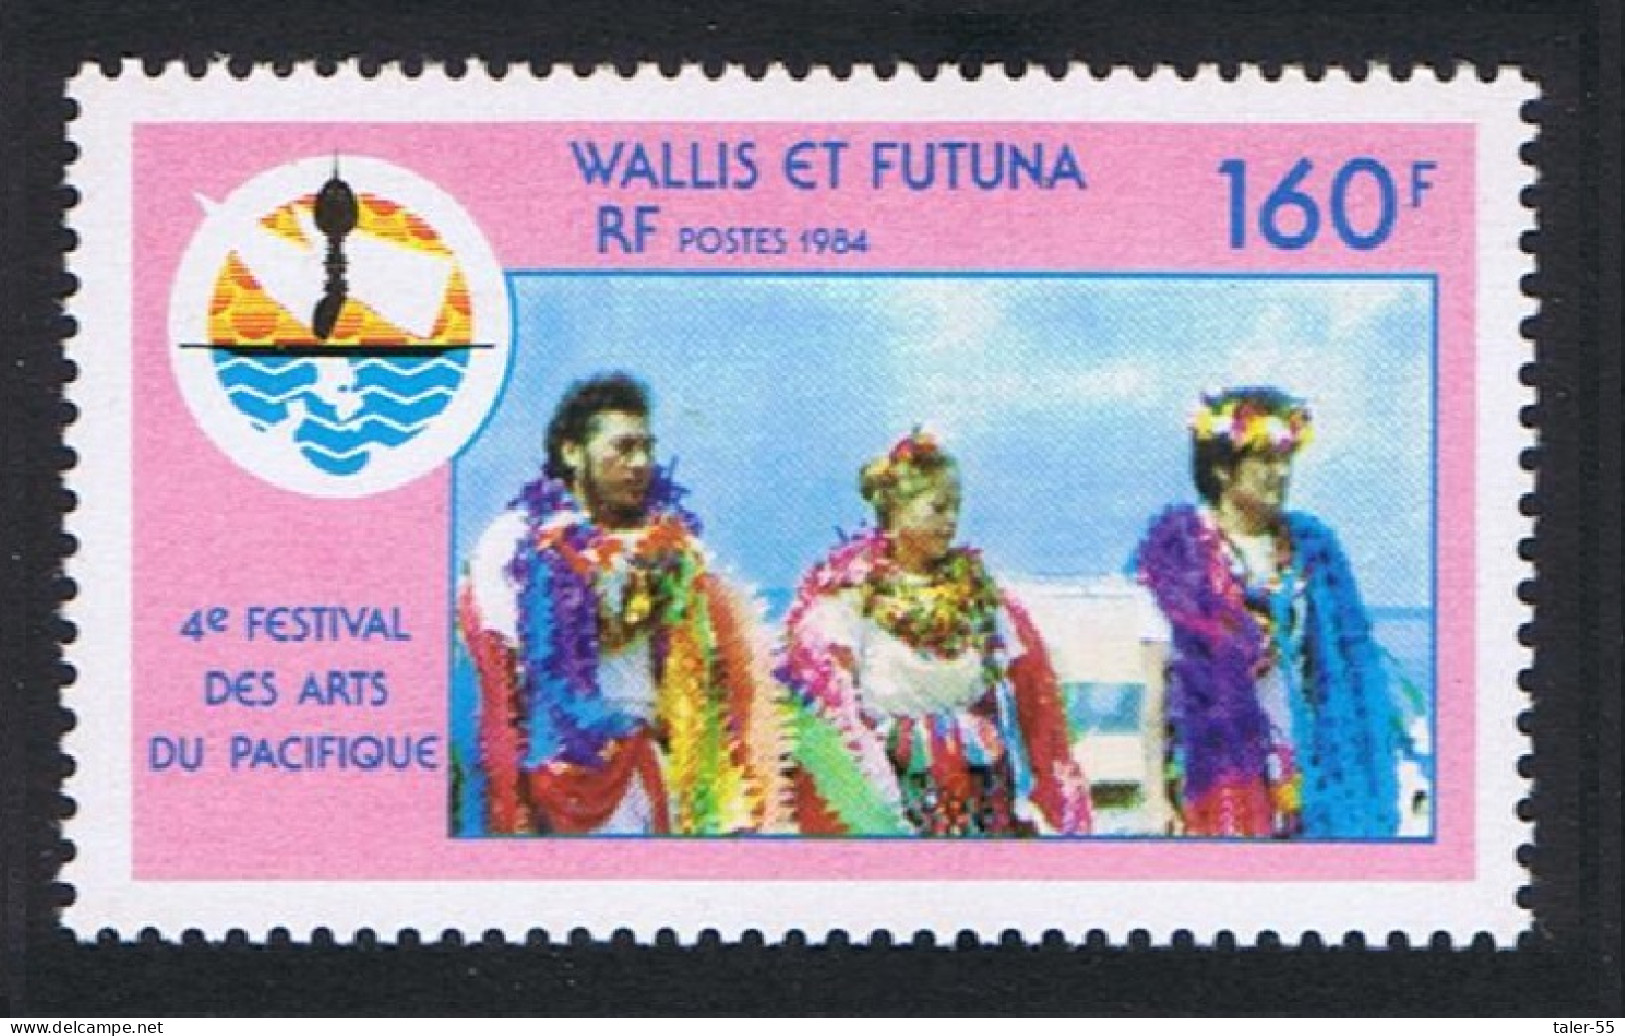 Wallis And Futuna 4th Pacific Arts Festival 1984 MNH SG#456 Sc#318 - Neufs